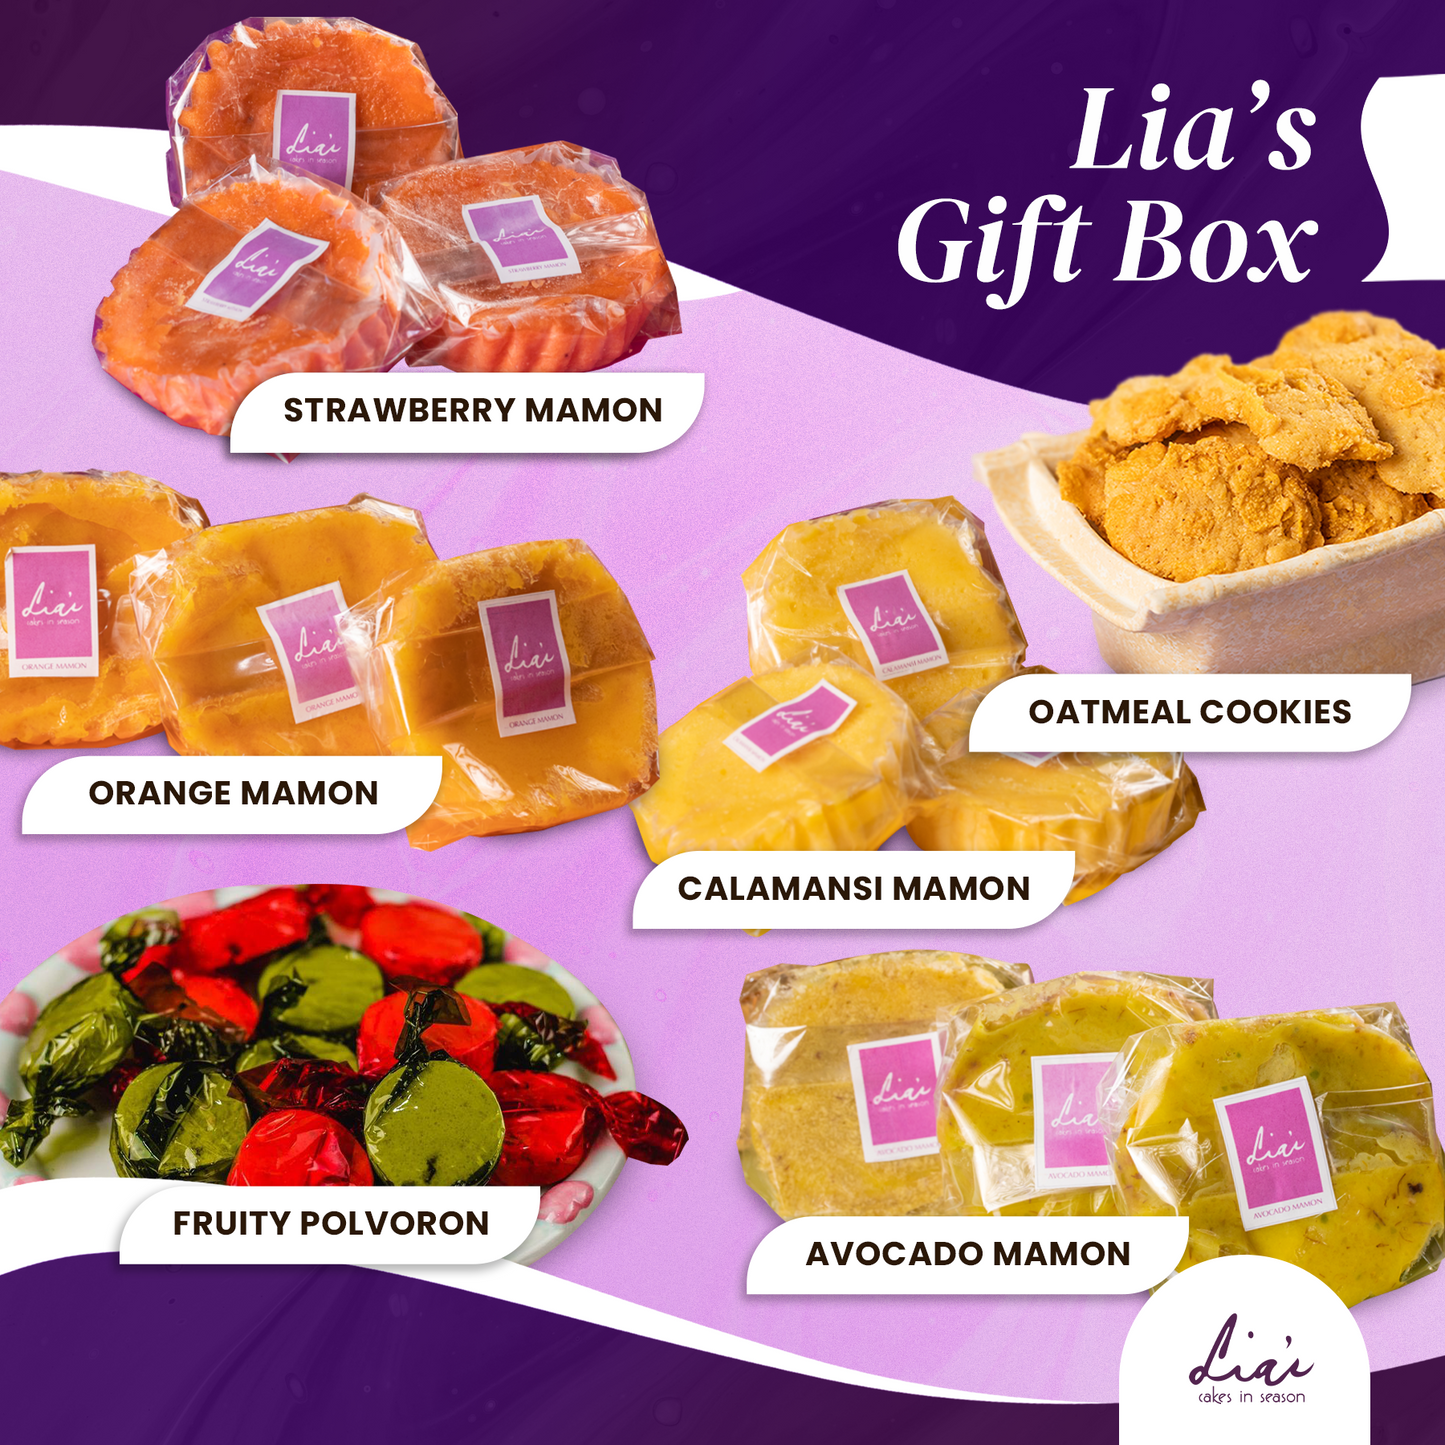 Lia's Gift Box